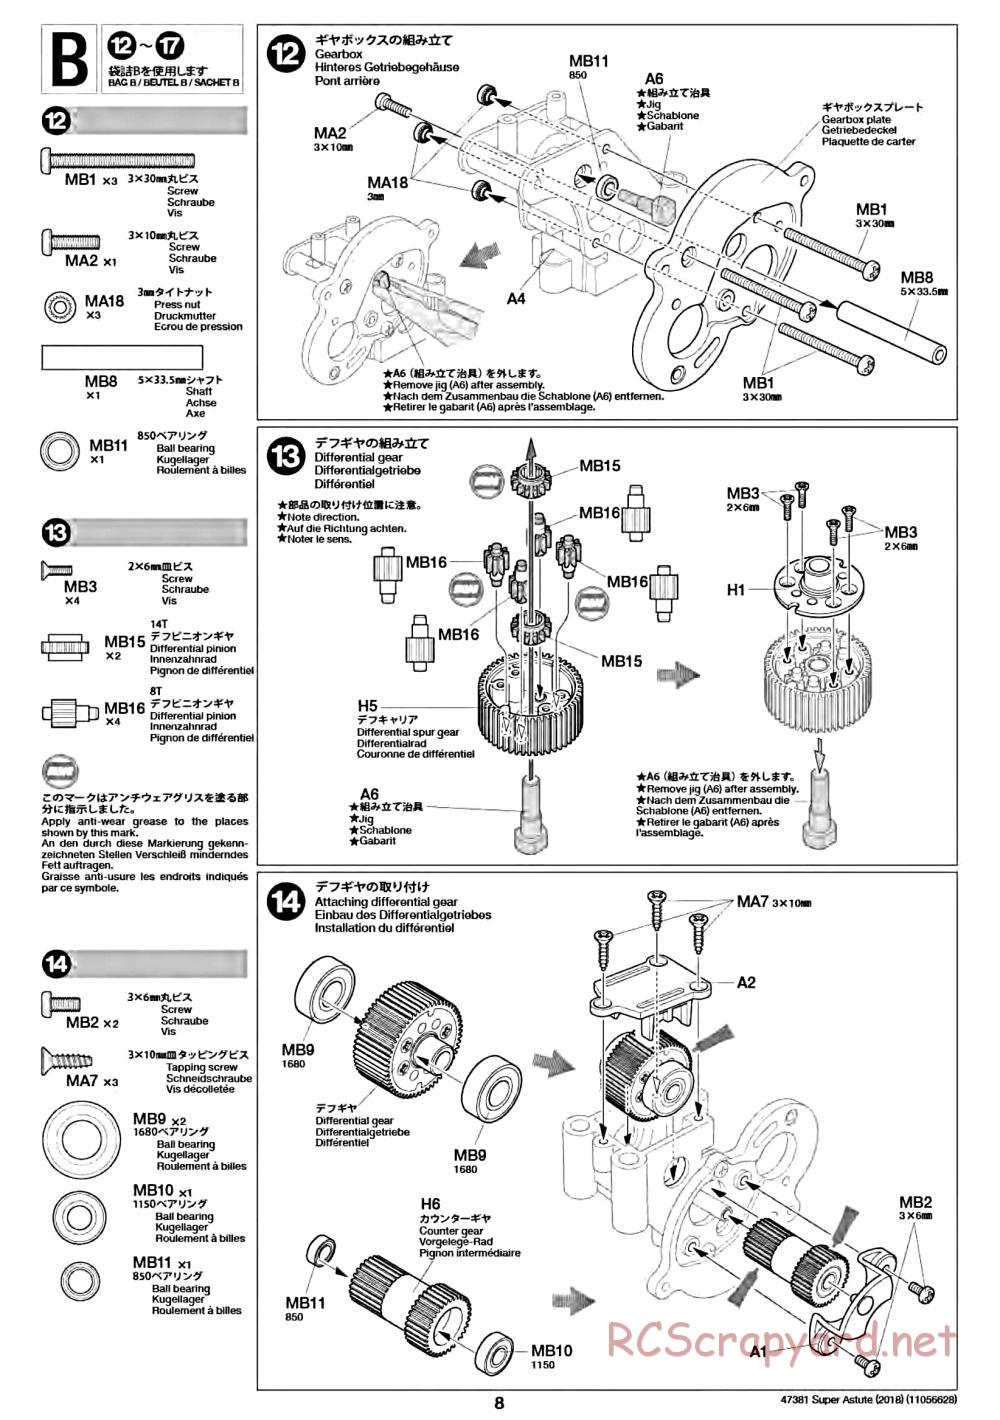 Tamiya - Super Astute (2018) Chassis - Manual - Page 8